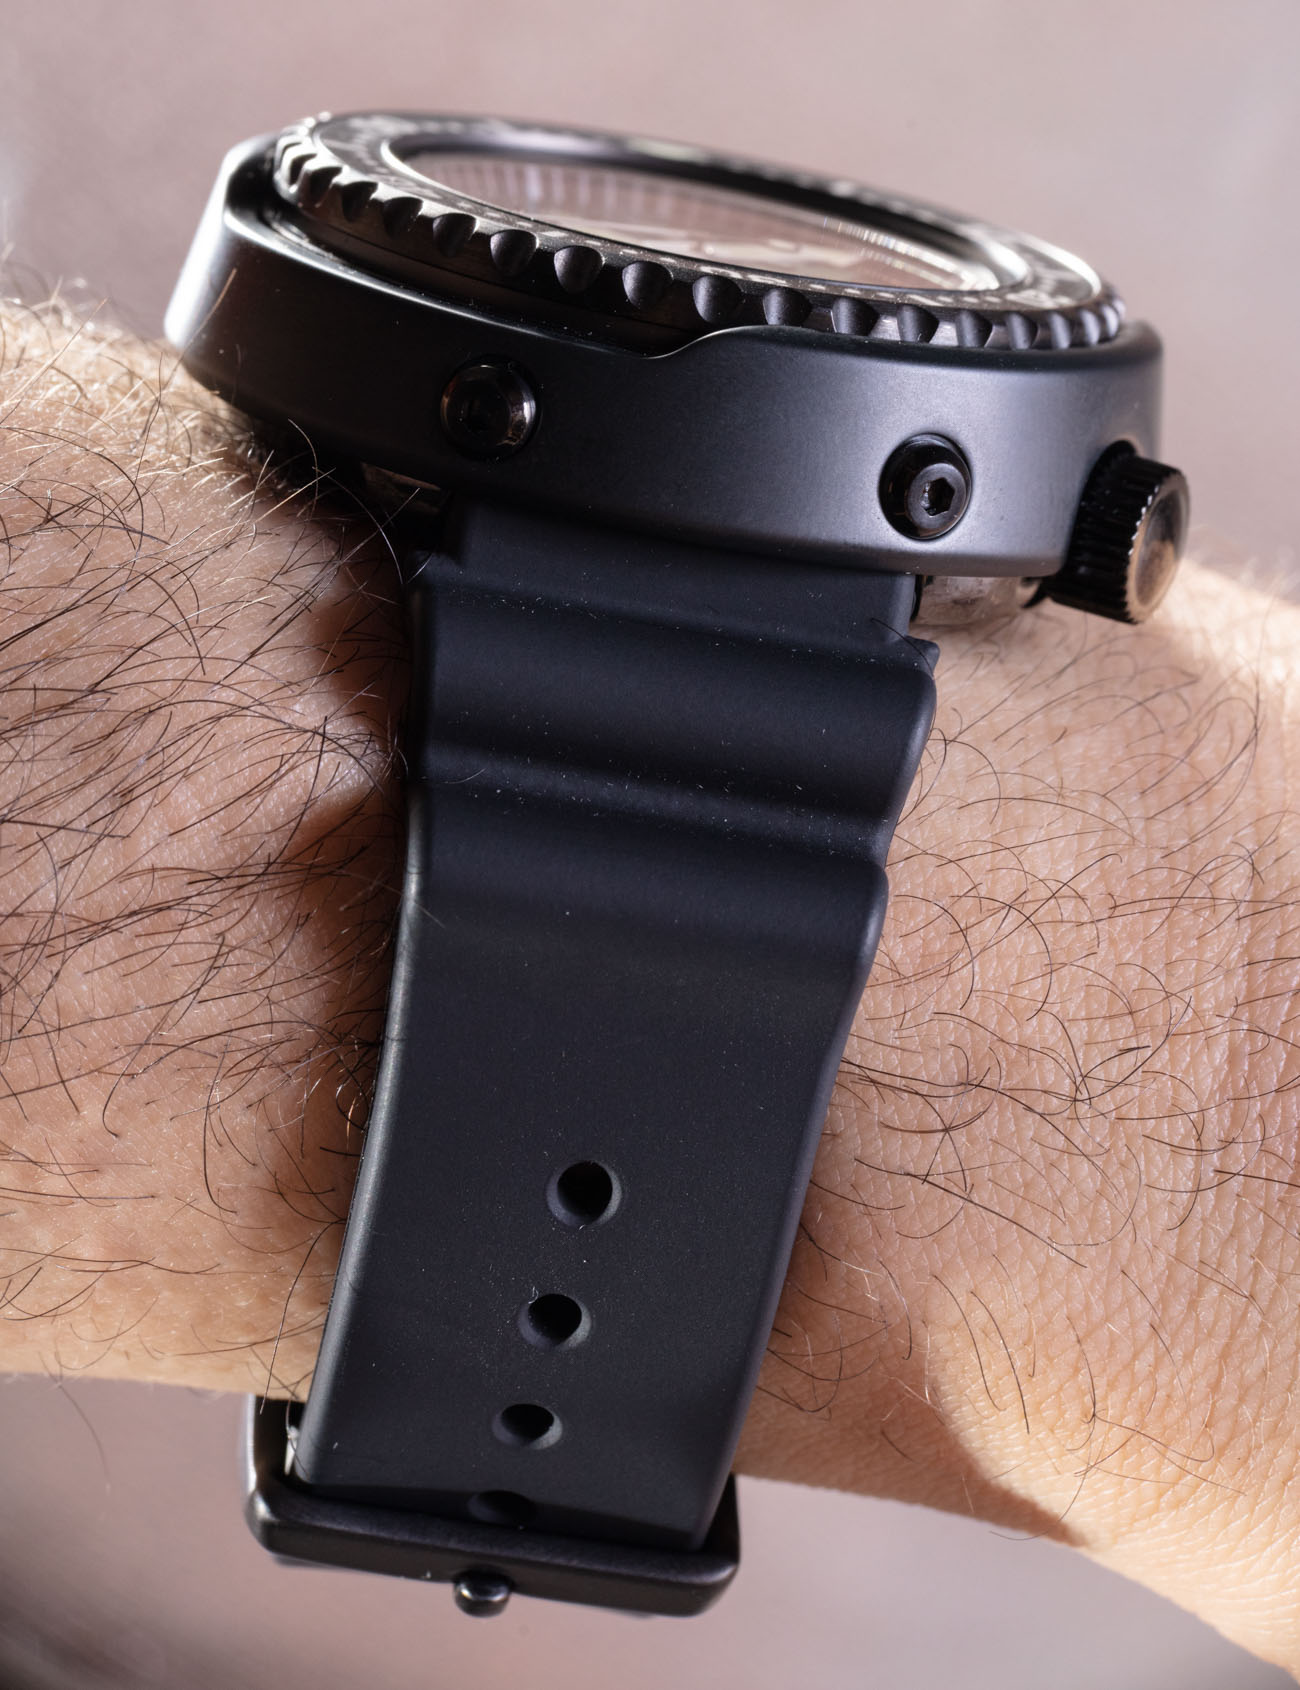 精工 Prospex S23631 手表是对 1970 年代原始金枪鱼潜水员的颂歌